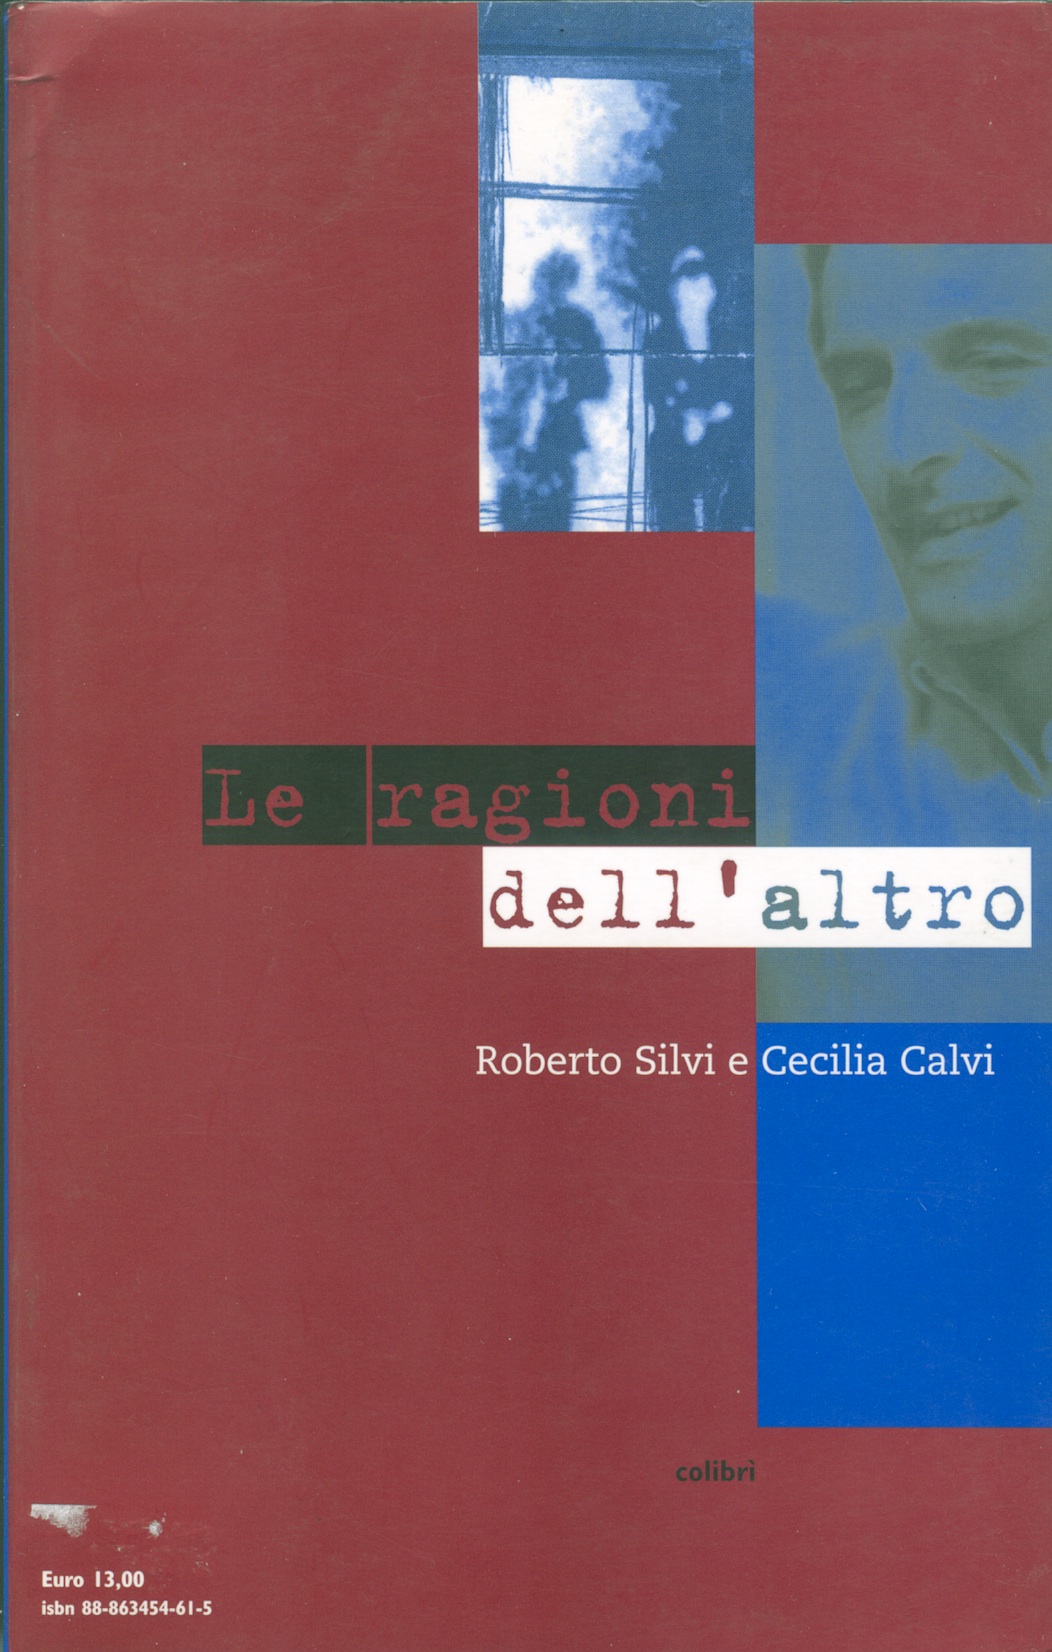 Le ragioni dell'altro, di Roberto Silvi e Cecilia Calvi, ed. Colibrì marzo 2004